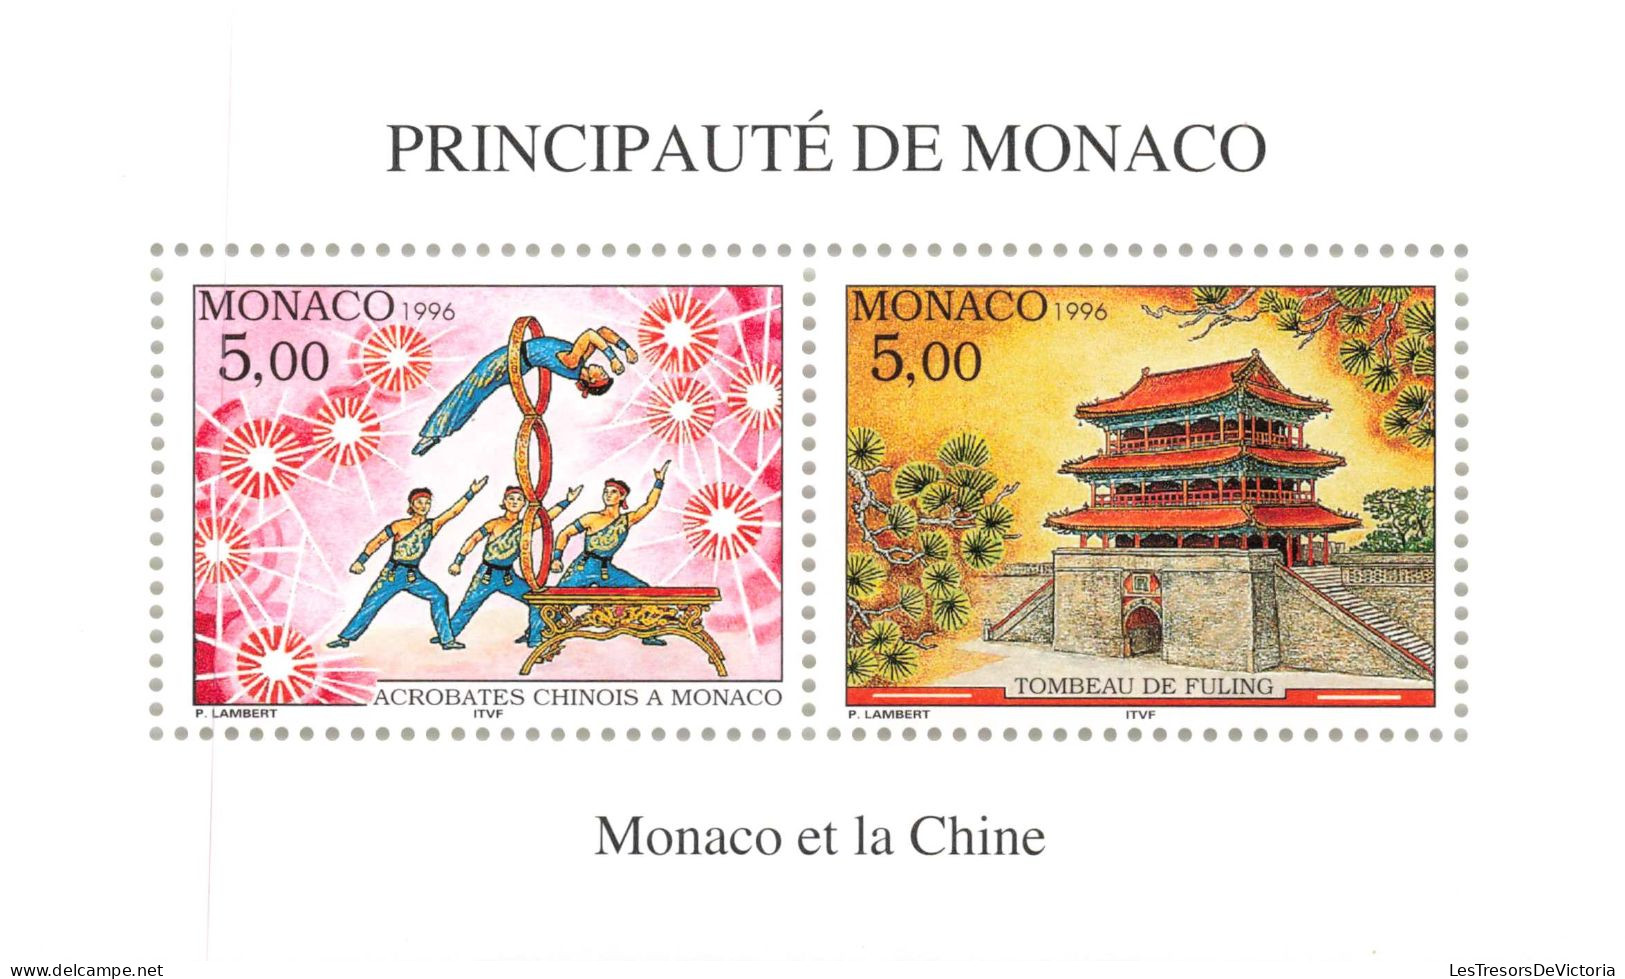 Monaco - Blocs MNH * - 1996 - Principauté De Monaco - Monaco Et Le Chine - Blocks & Sheetlets